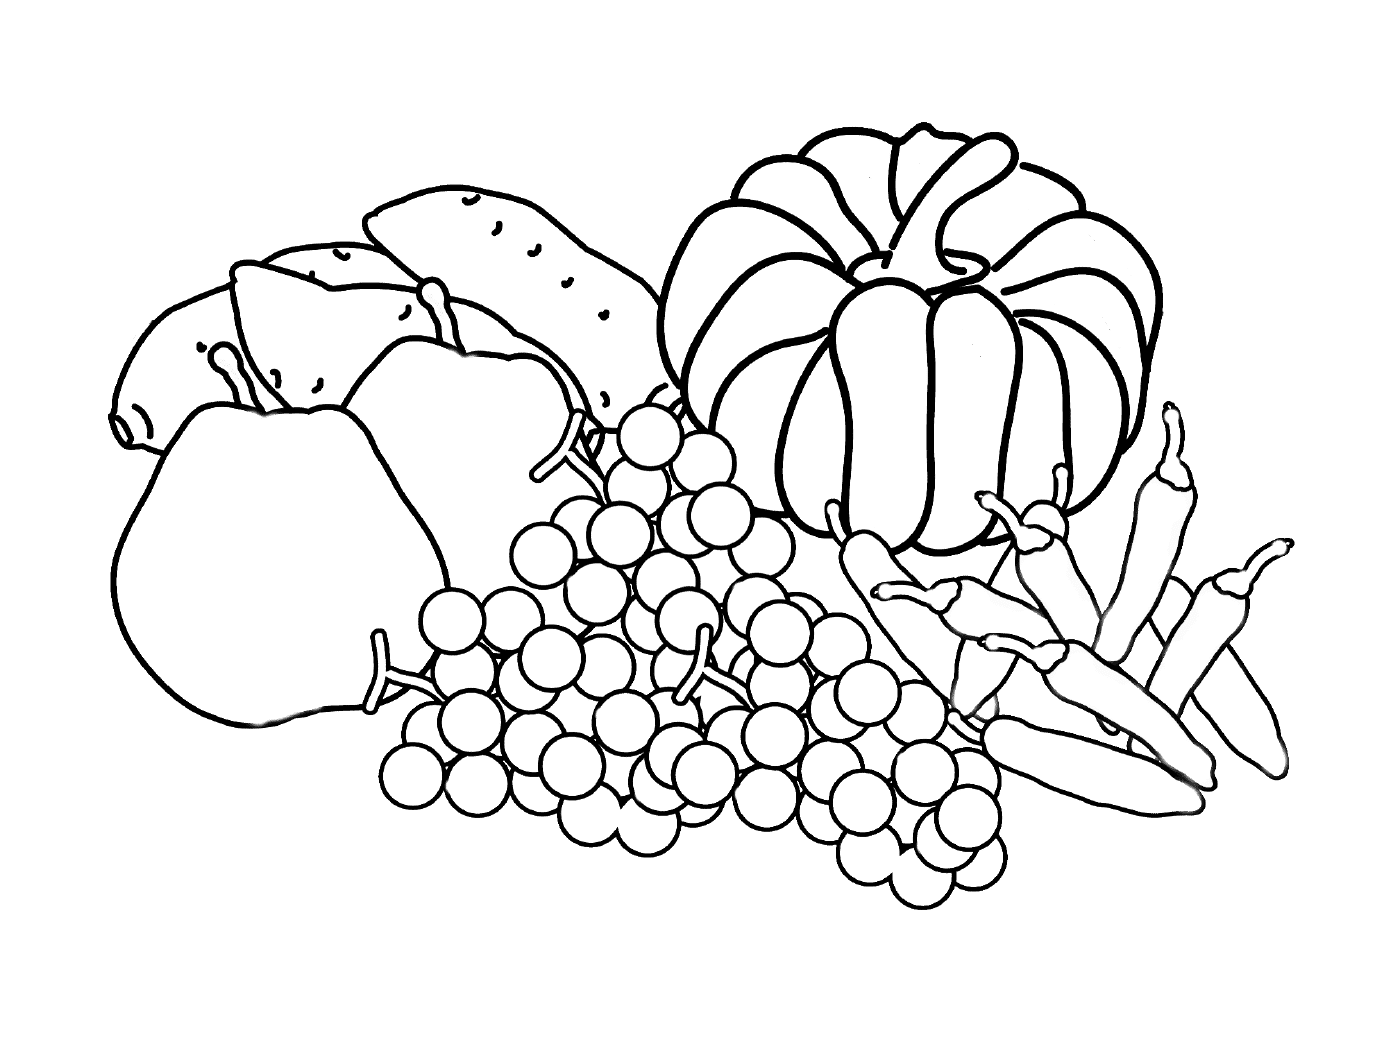  Uma variedade de frutas 